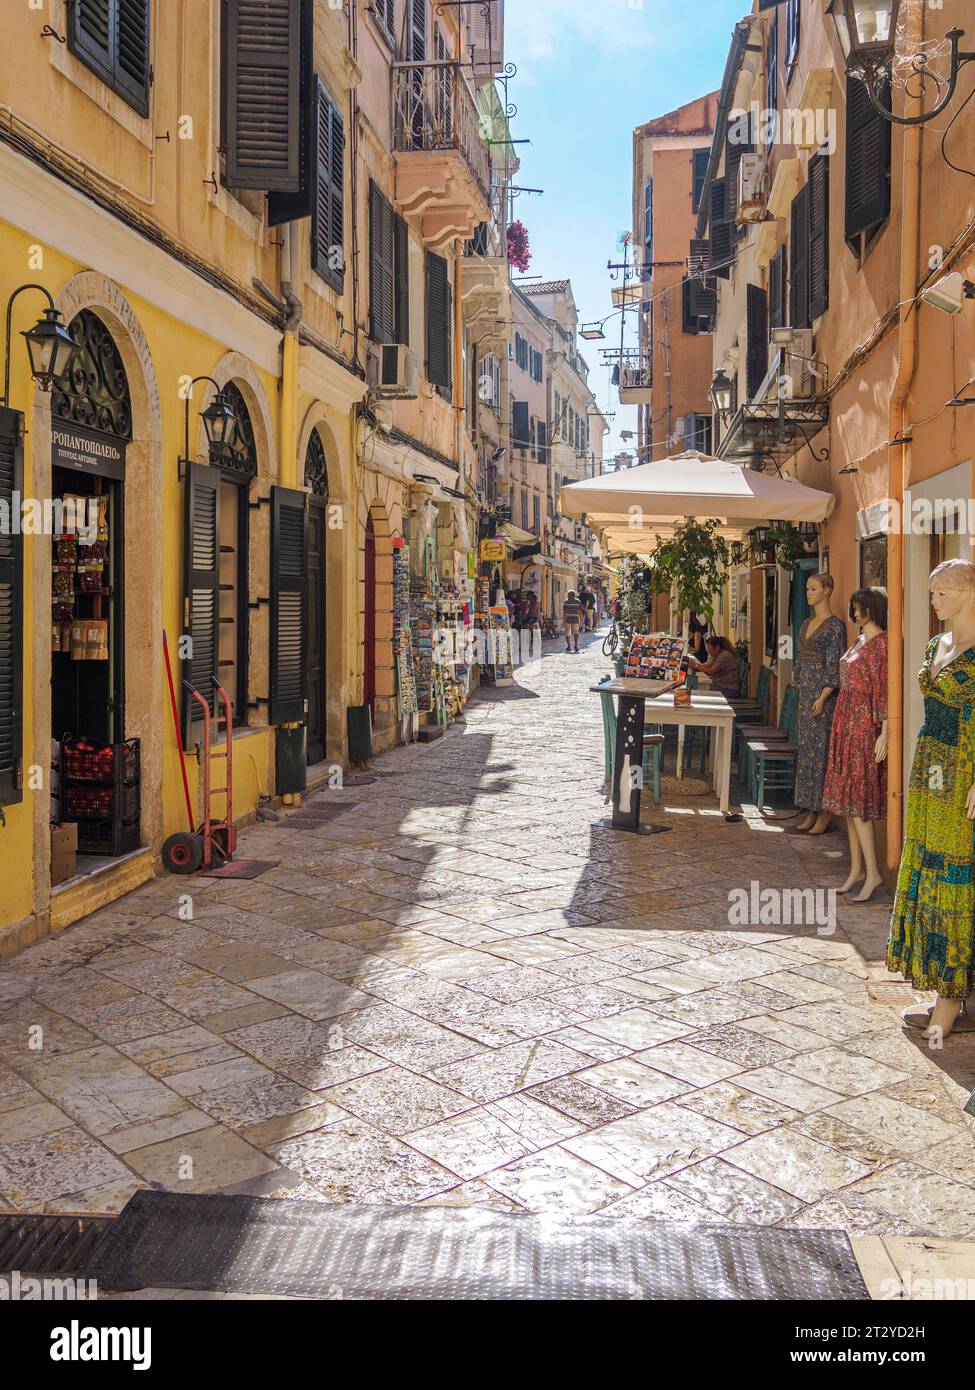 Strade di negozi nella vibrante città bizantina di Kerkira o Corfù città capitale dell'isola di Corfù, nelle Isole Ionie della Grecia Foto Stock